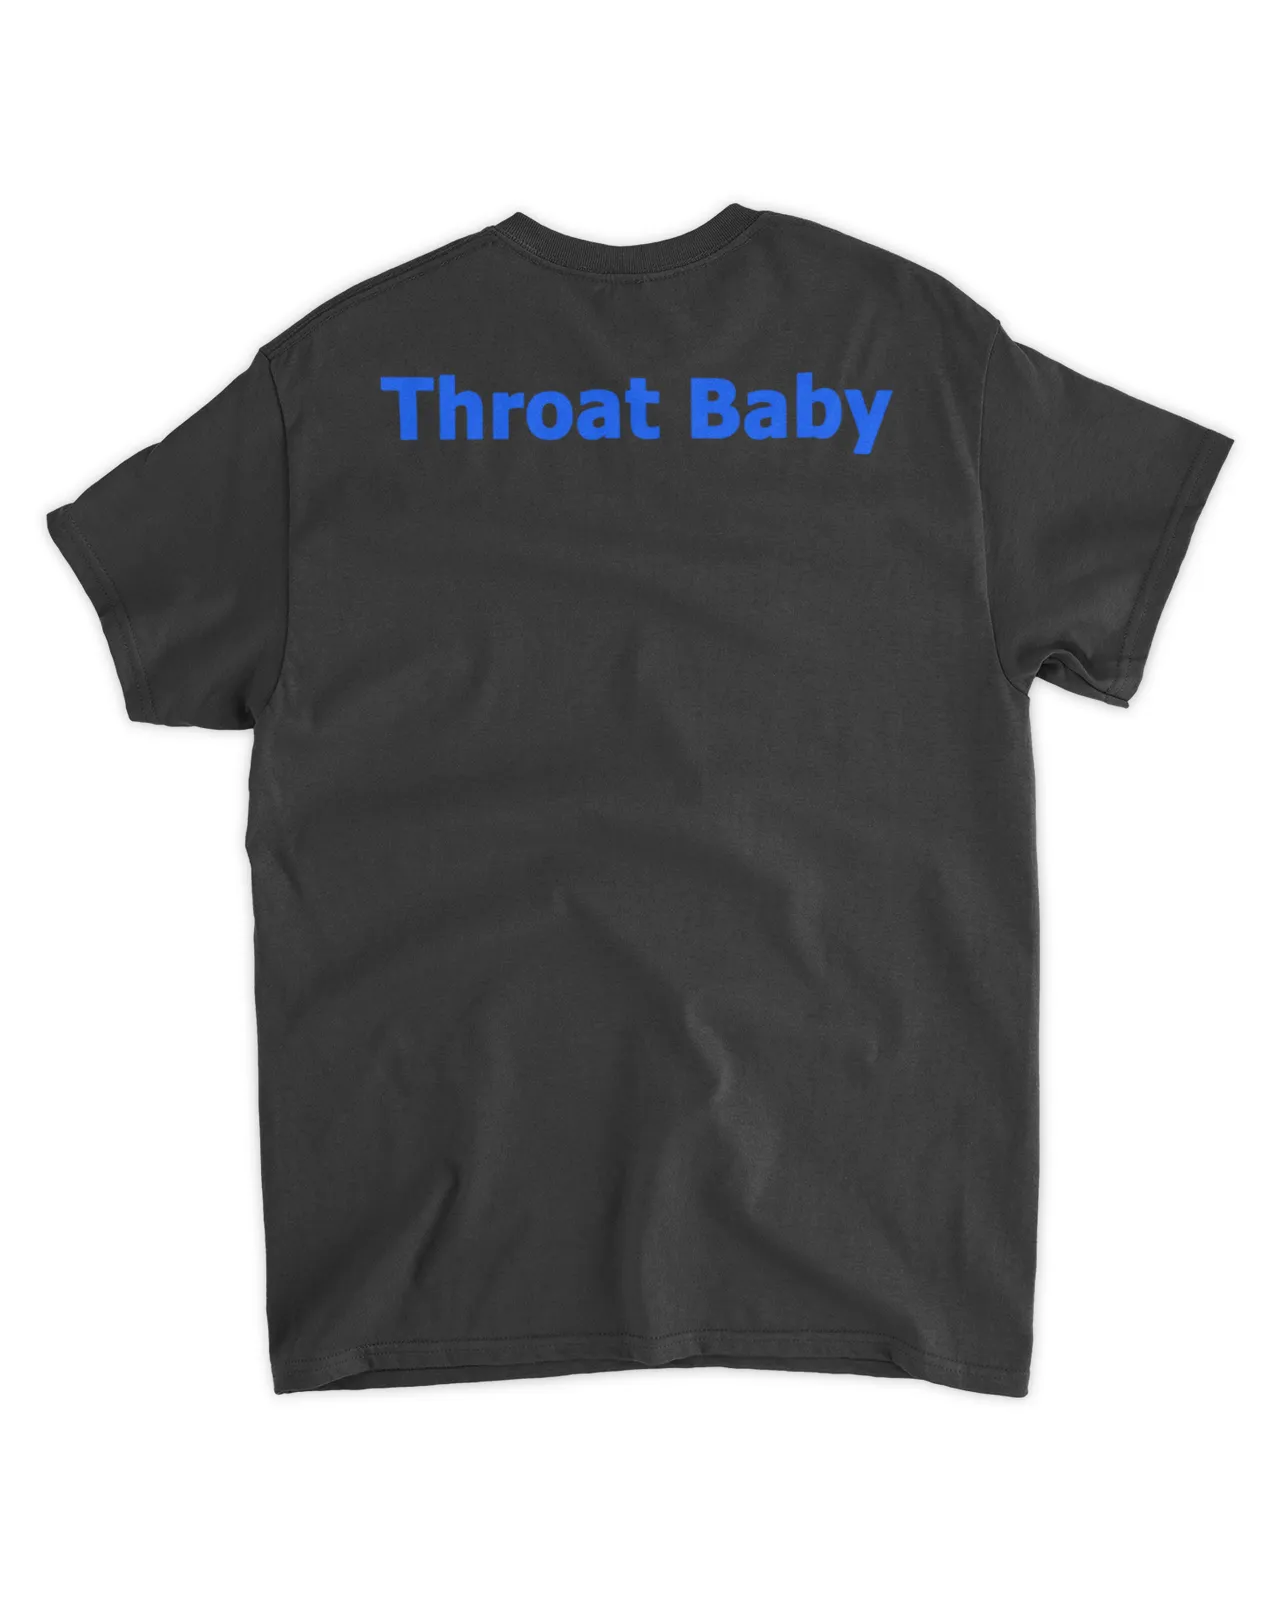  Throat baby shirt